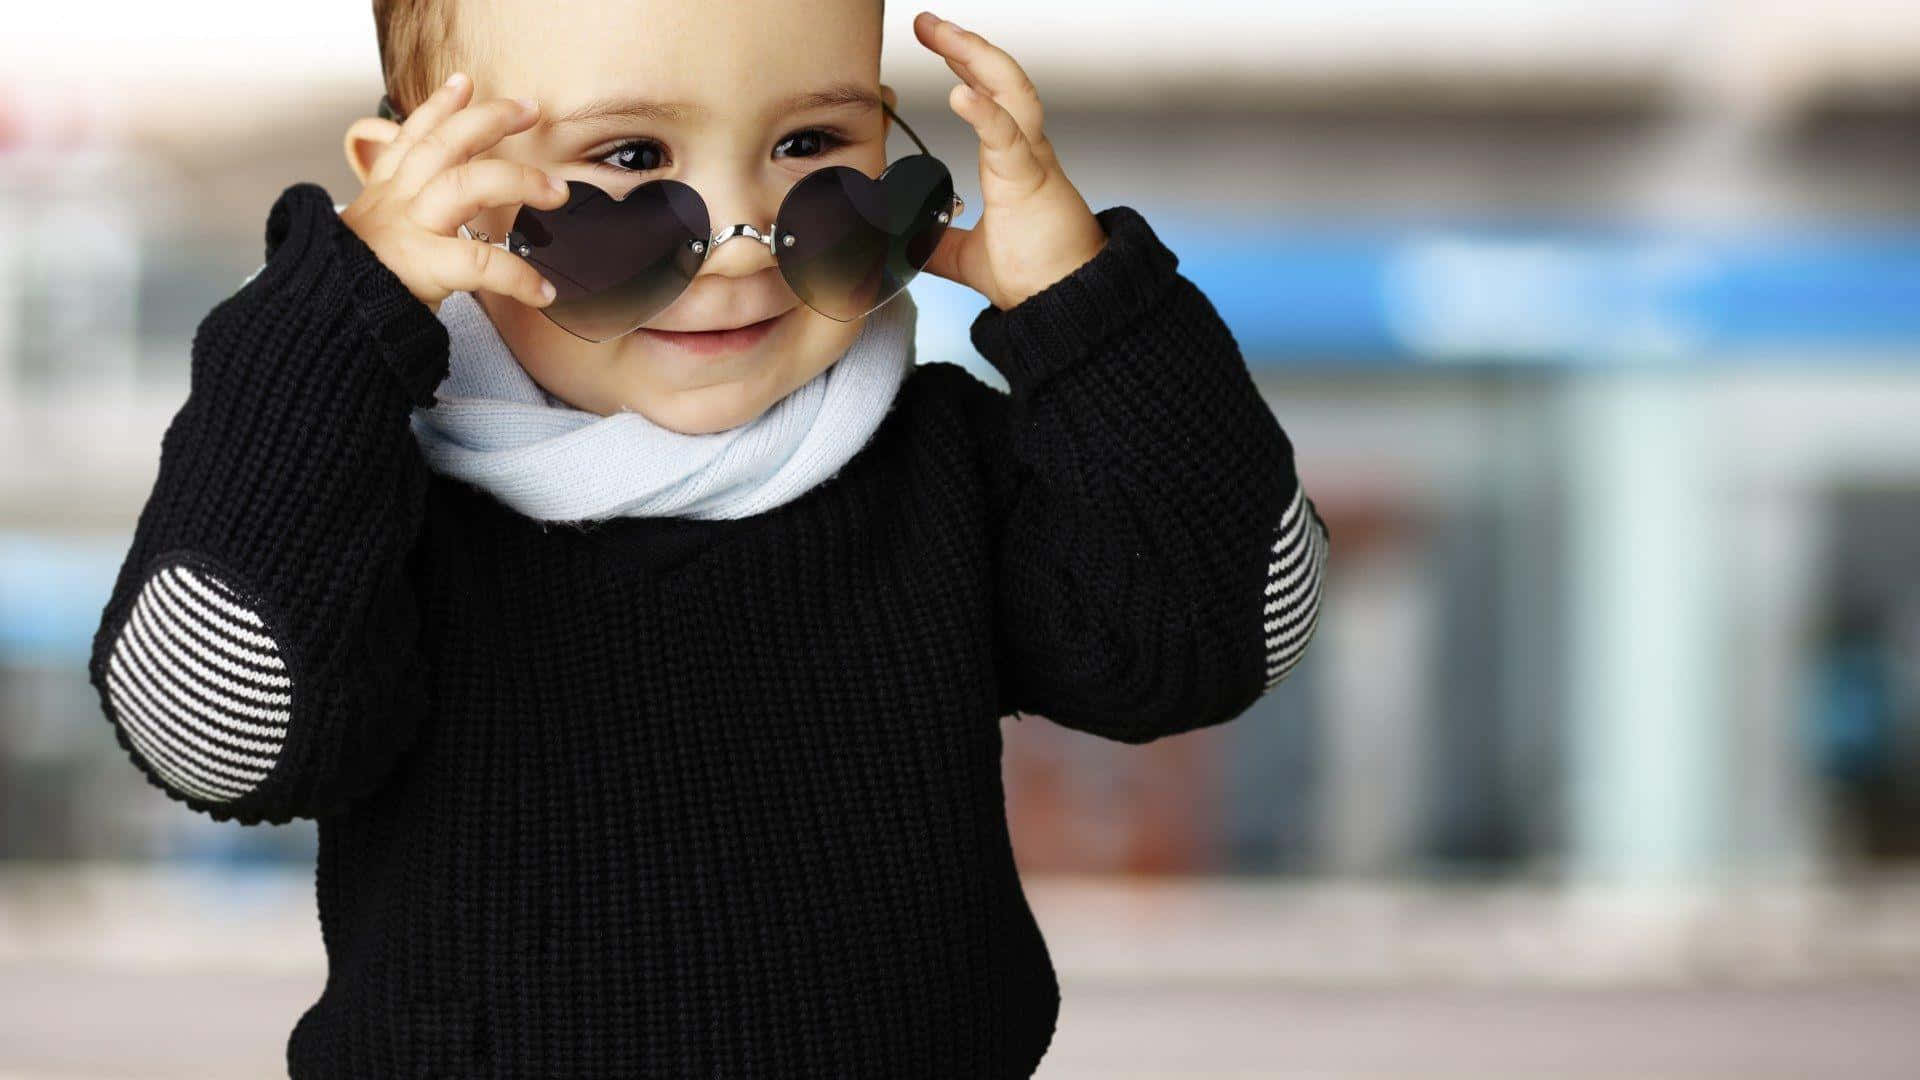 Stylish Boy Wearing Heart Sunglasses Wallpaper